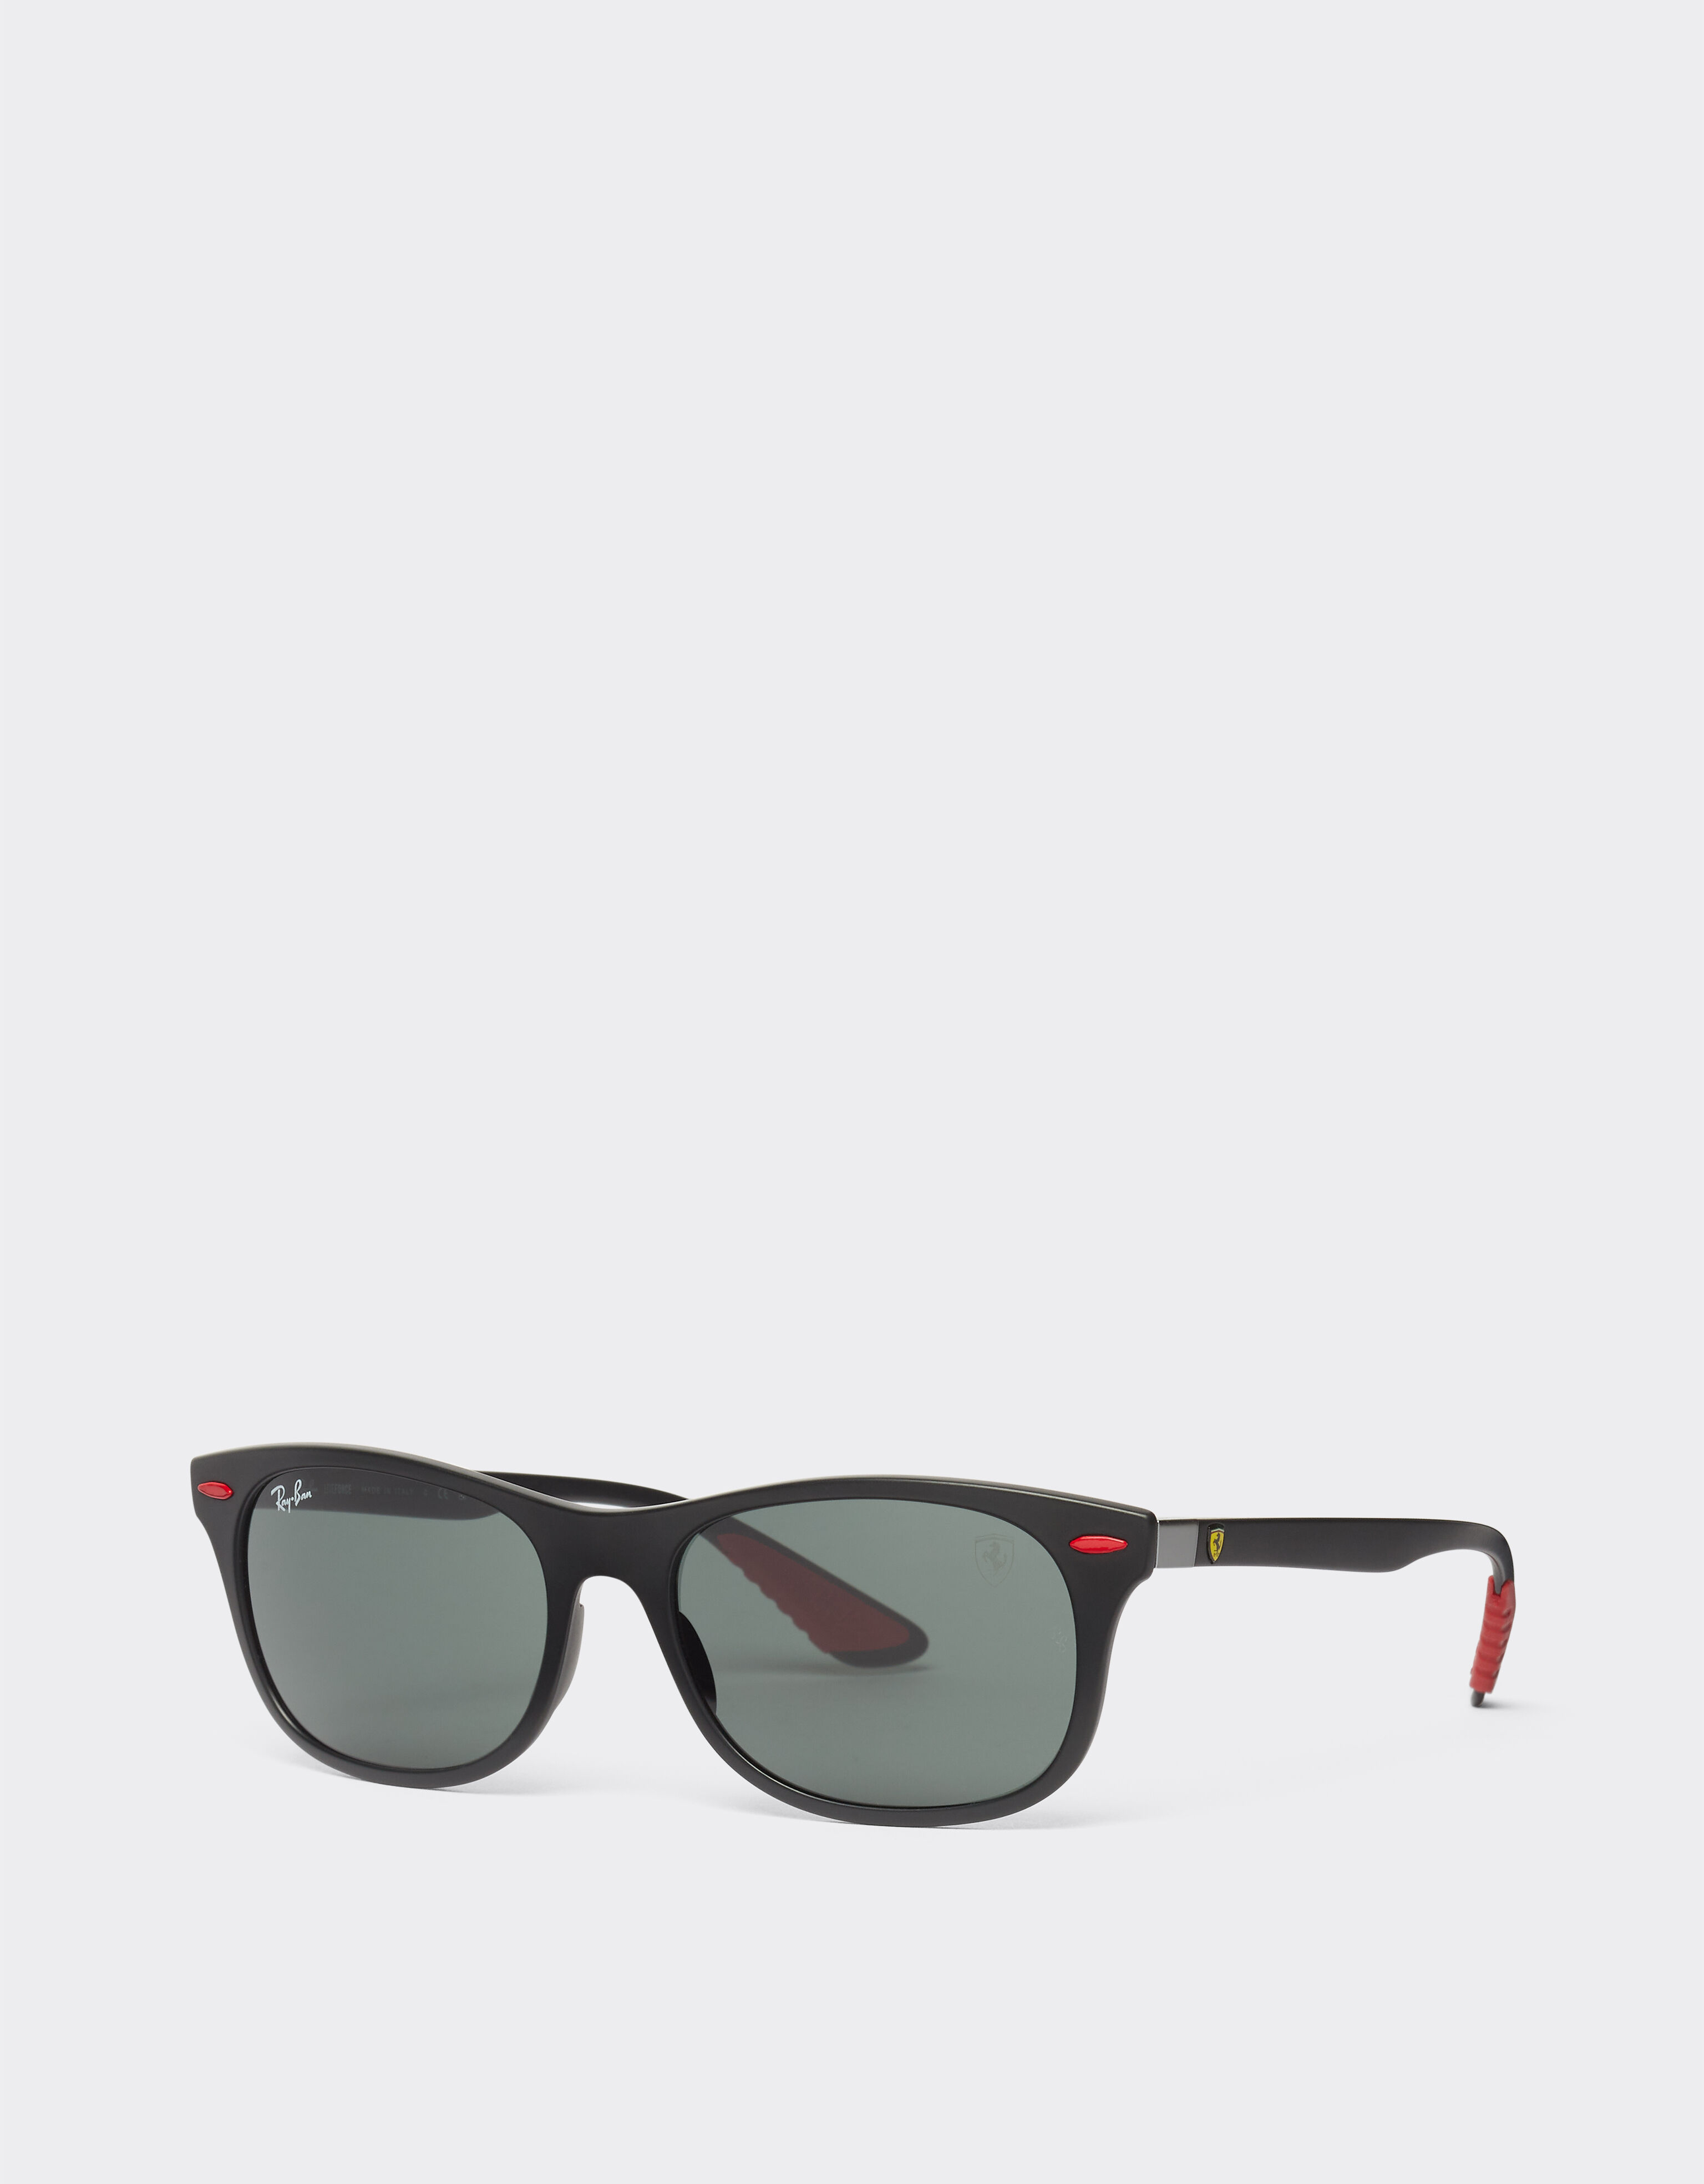 Ferrari Ray-Ban für Scuderia Ferrari Sonnenbrille 0RB4607M in Schwarz mit dunkelgrünen Gläsern Mattschwarz F1296f